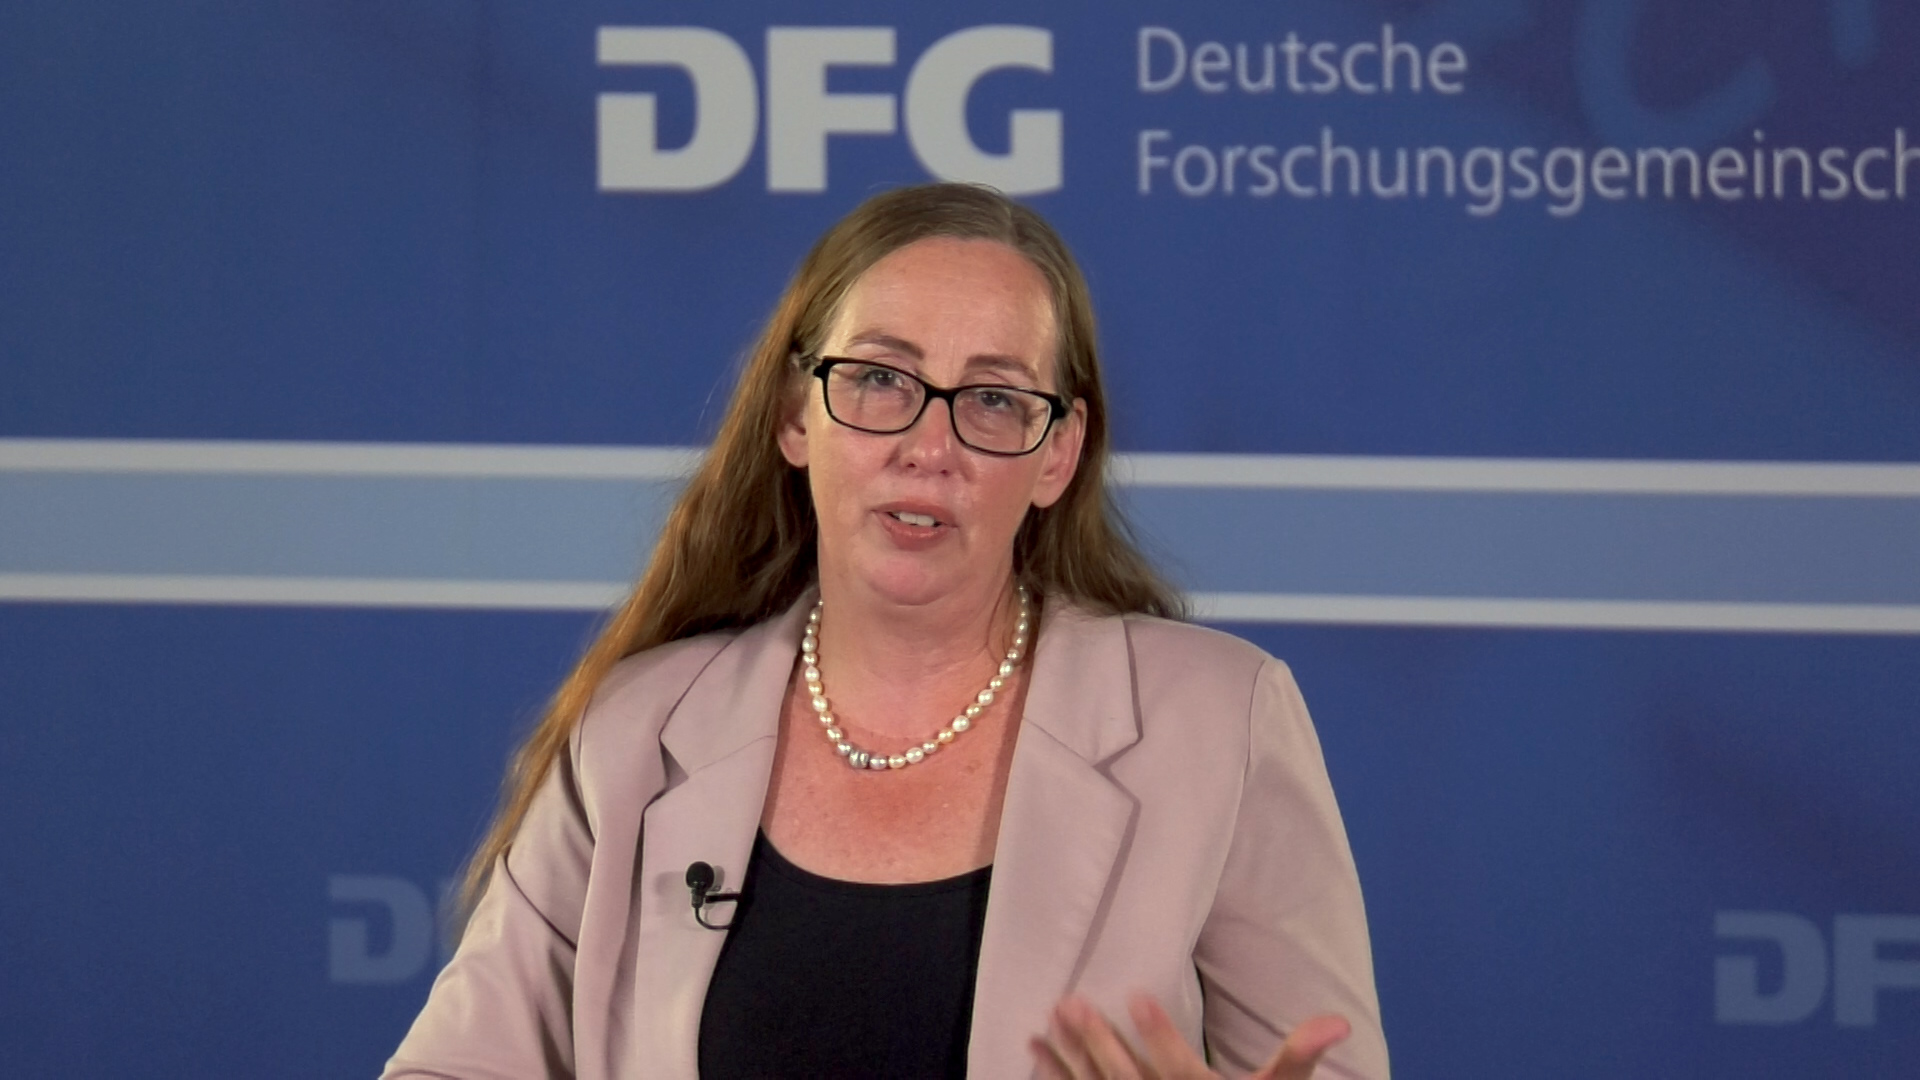 DFG department head Dr. Ulrike Eickhoff